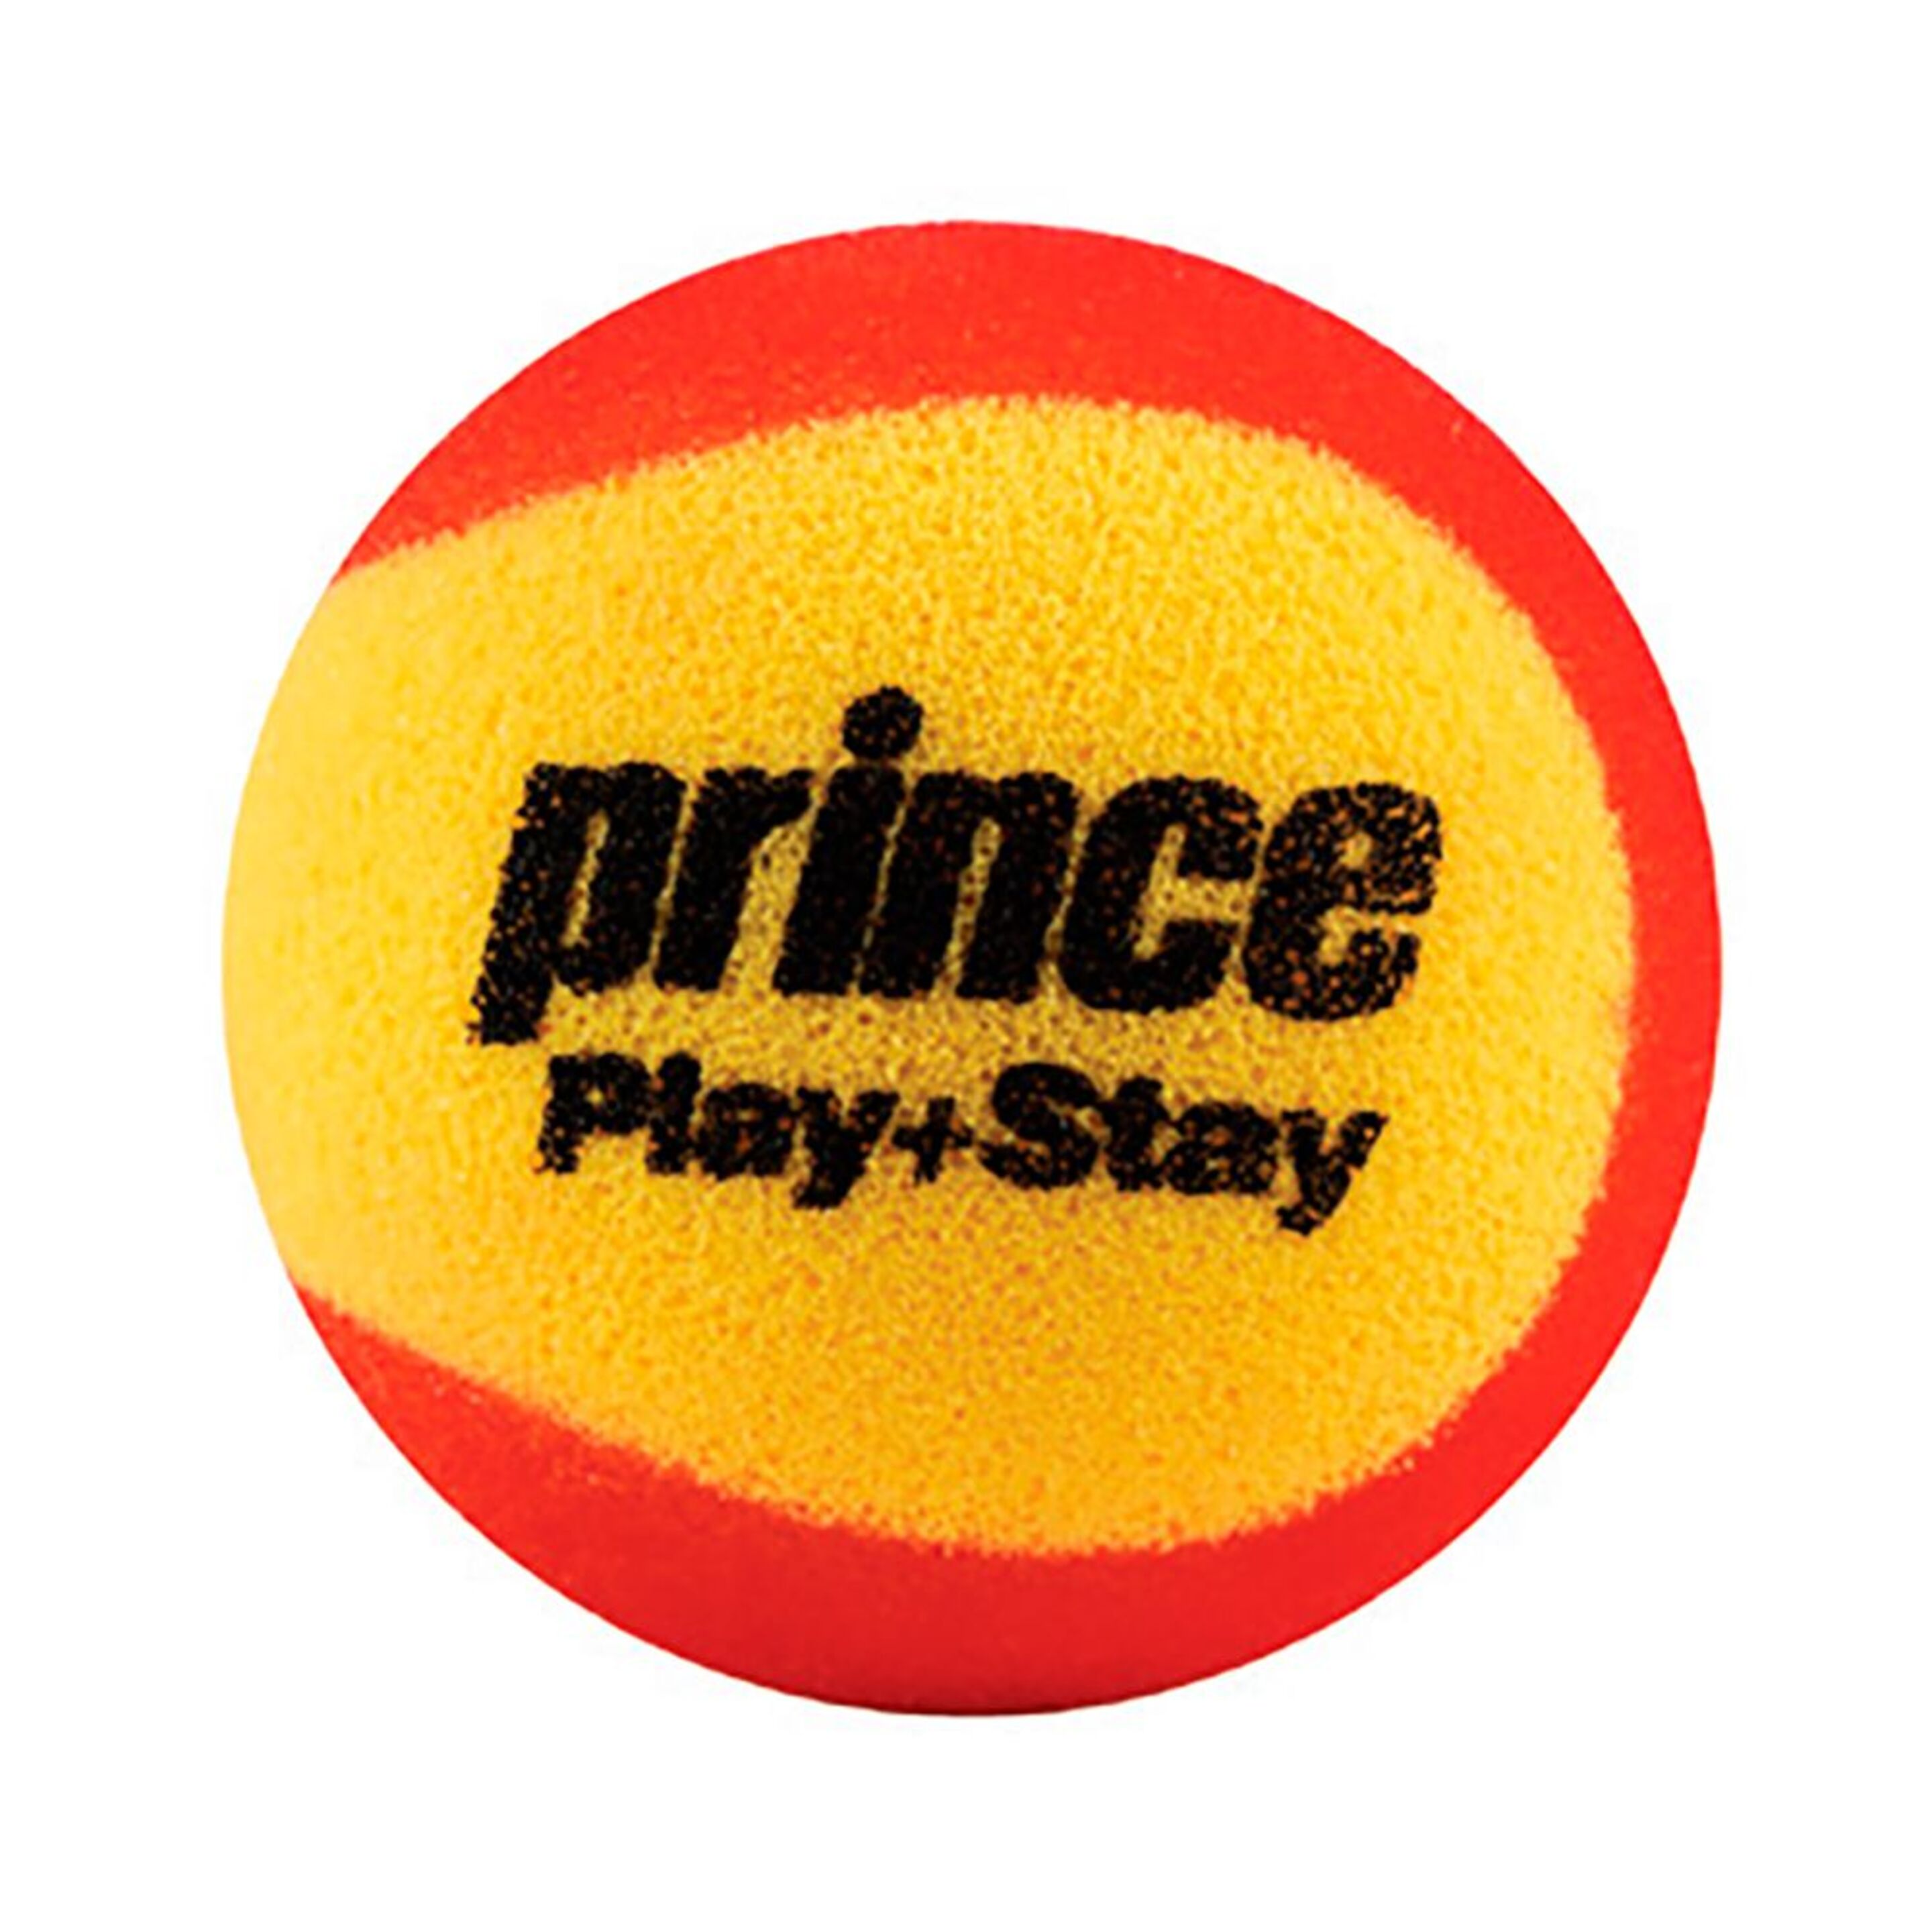 Bolsa De 12 Bolas De Tenis Prince Play & Stay Stage 3 Foam - Amarillo/Rojo  MKP